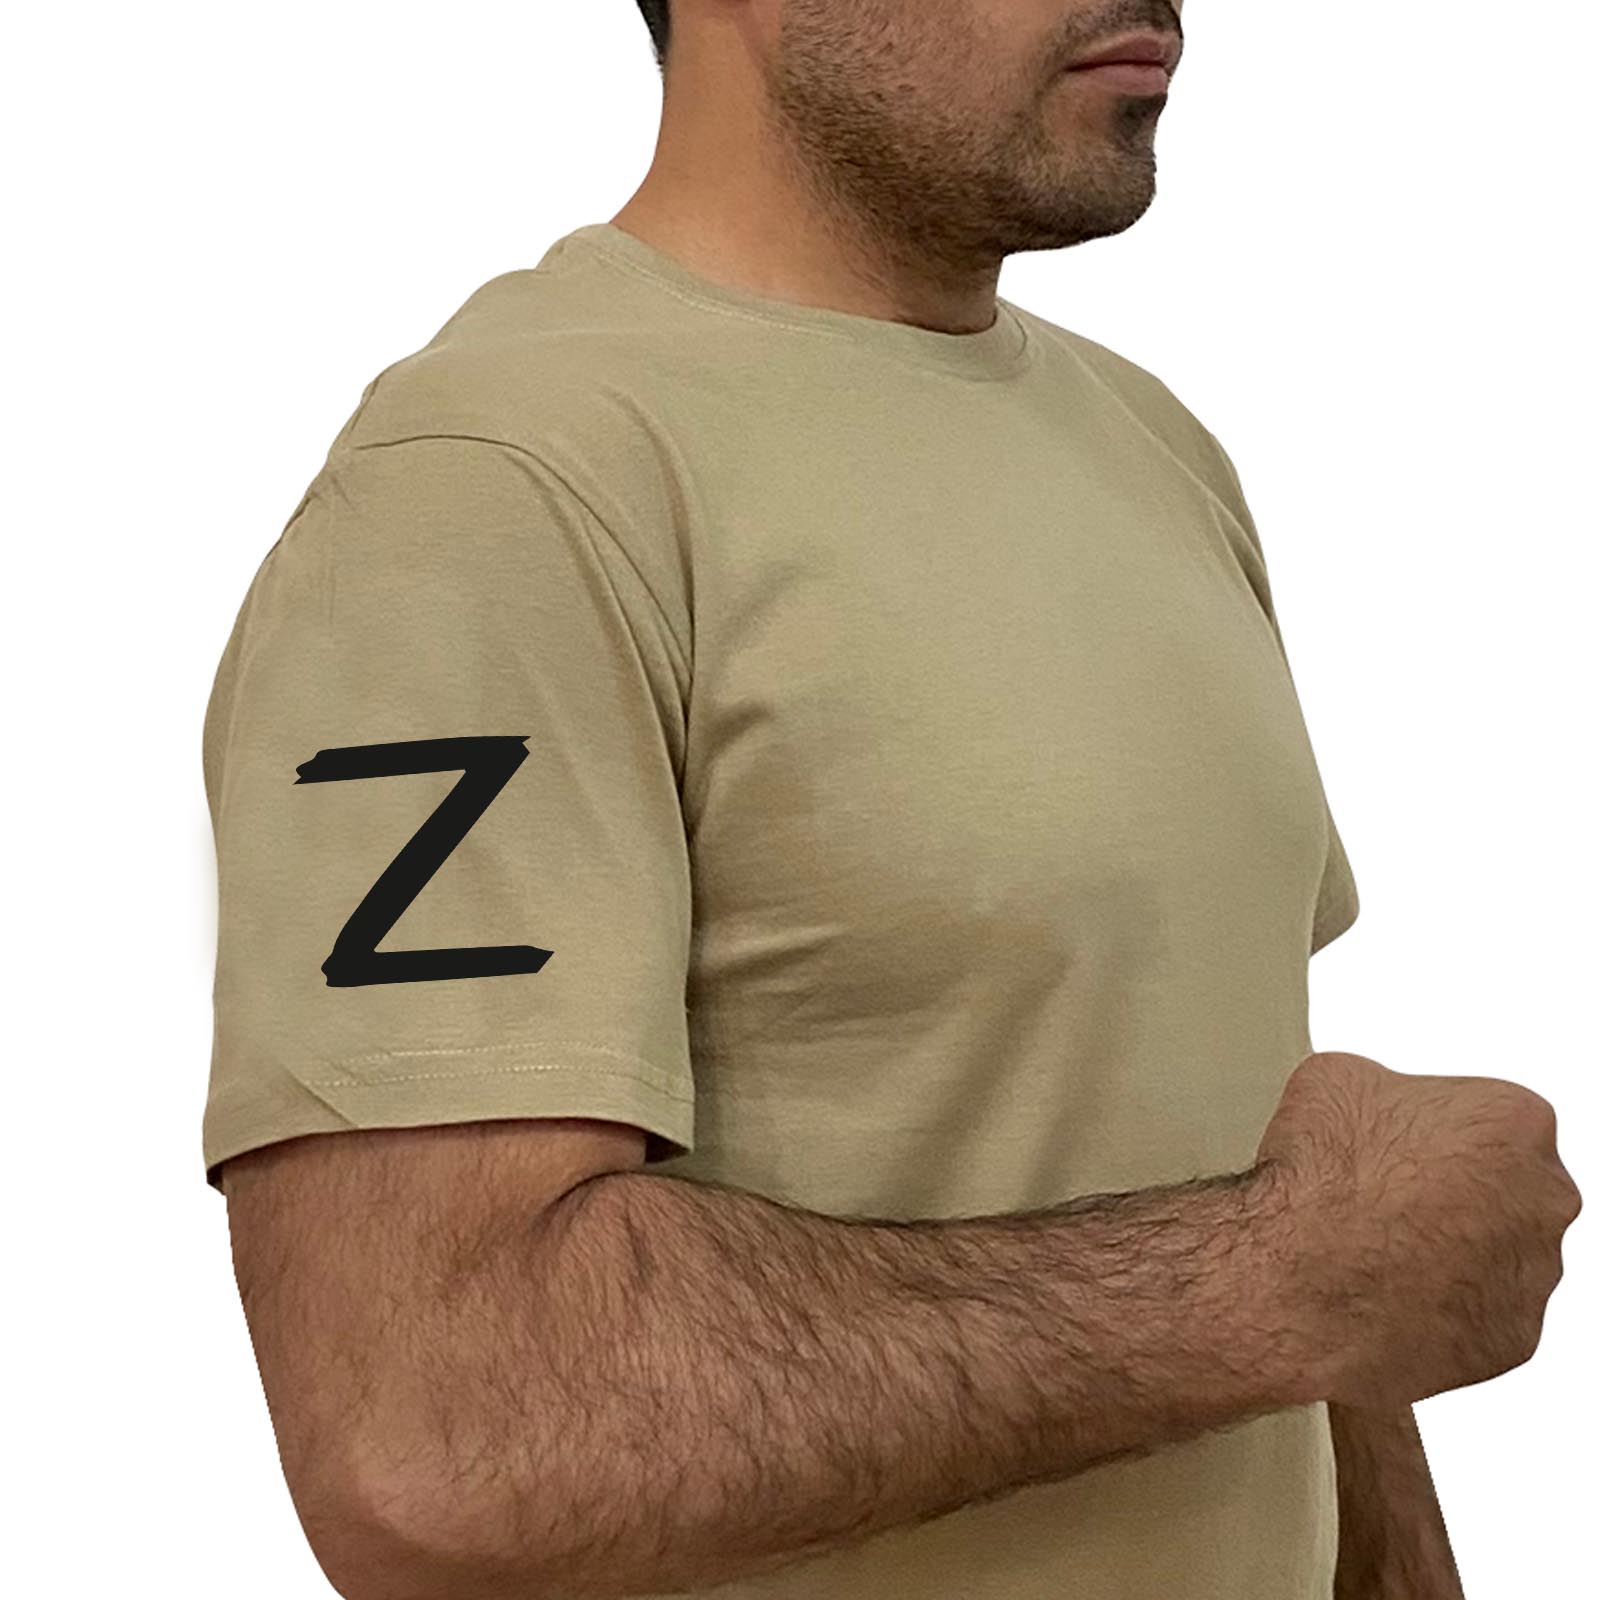 Купить строгую песочную футболку с литерой Z выгодно